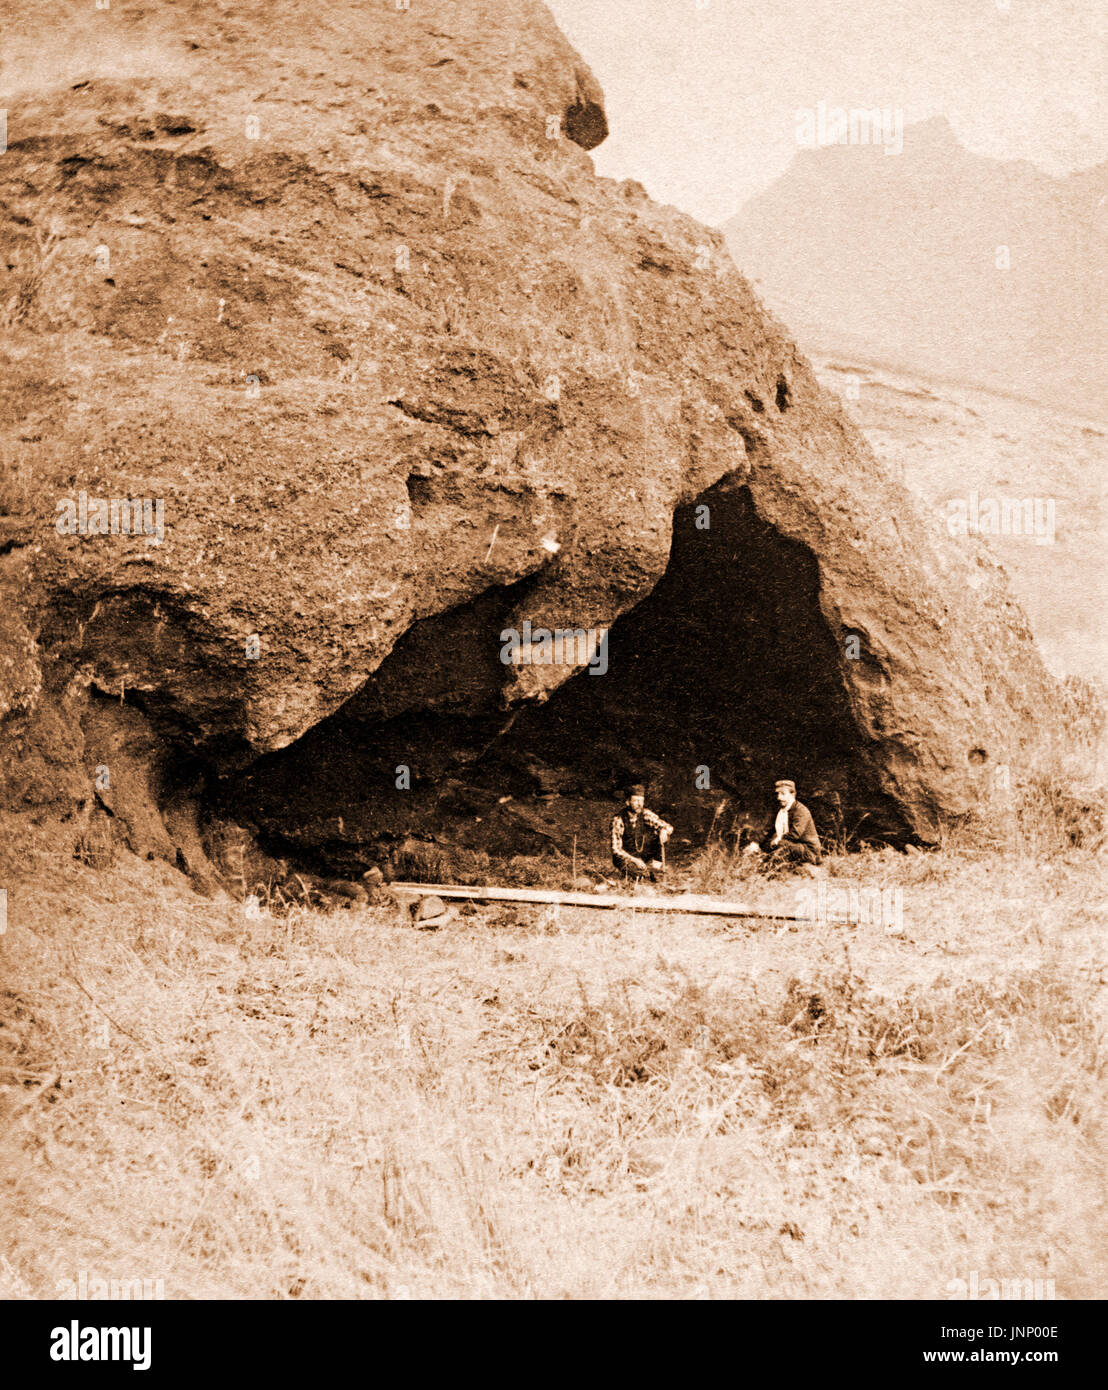 La grotte de Selkirk, île de Juan Fernandez au large des côtes du Chili, scène de l'histoire de Robinson Crusoé, basé sur l'Alexander Selkirk marooned séjour de plus de quatre ans, photo prise en 1874 Banque D'Images